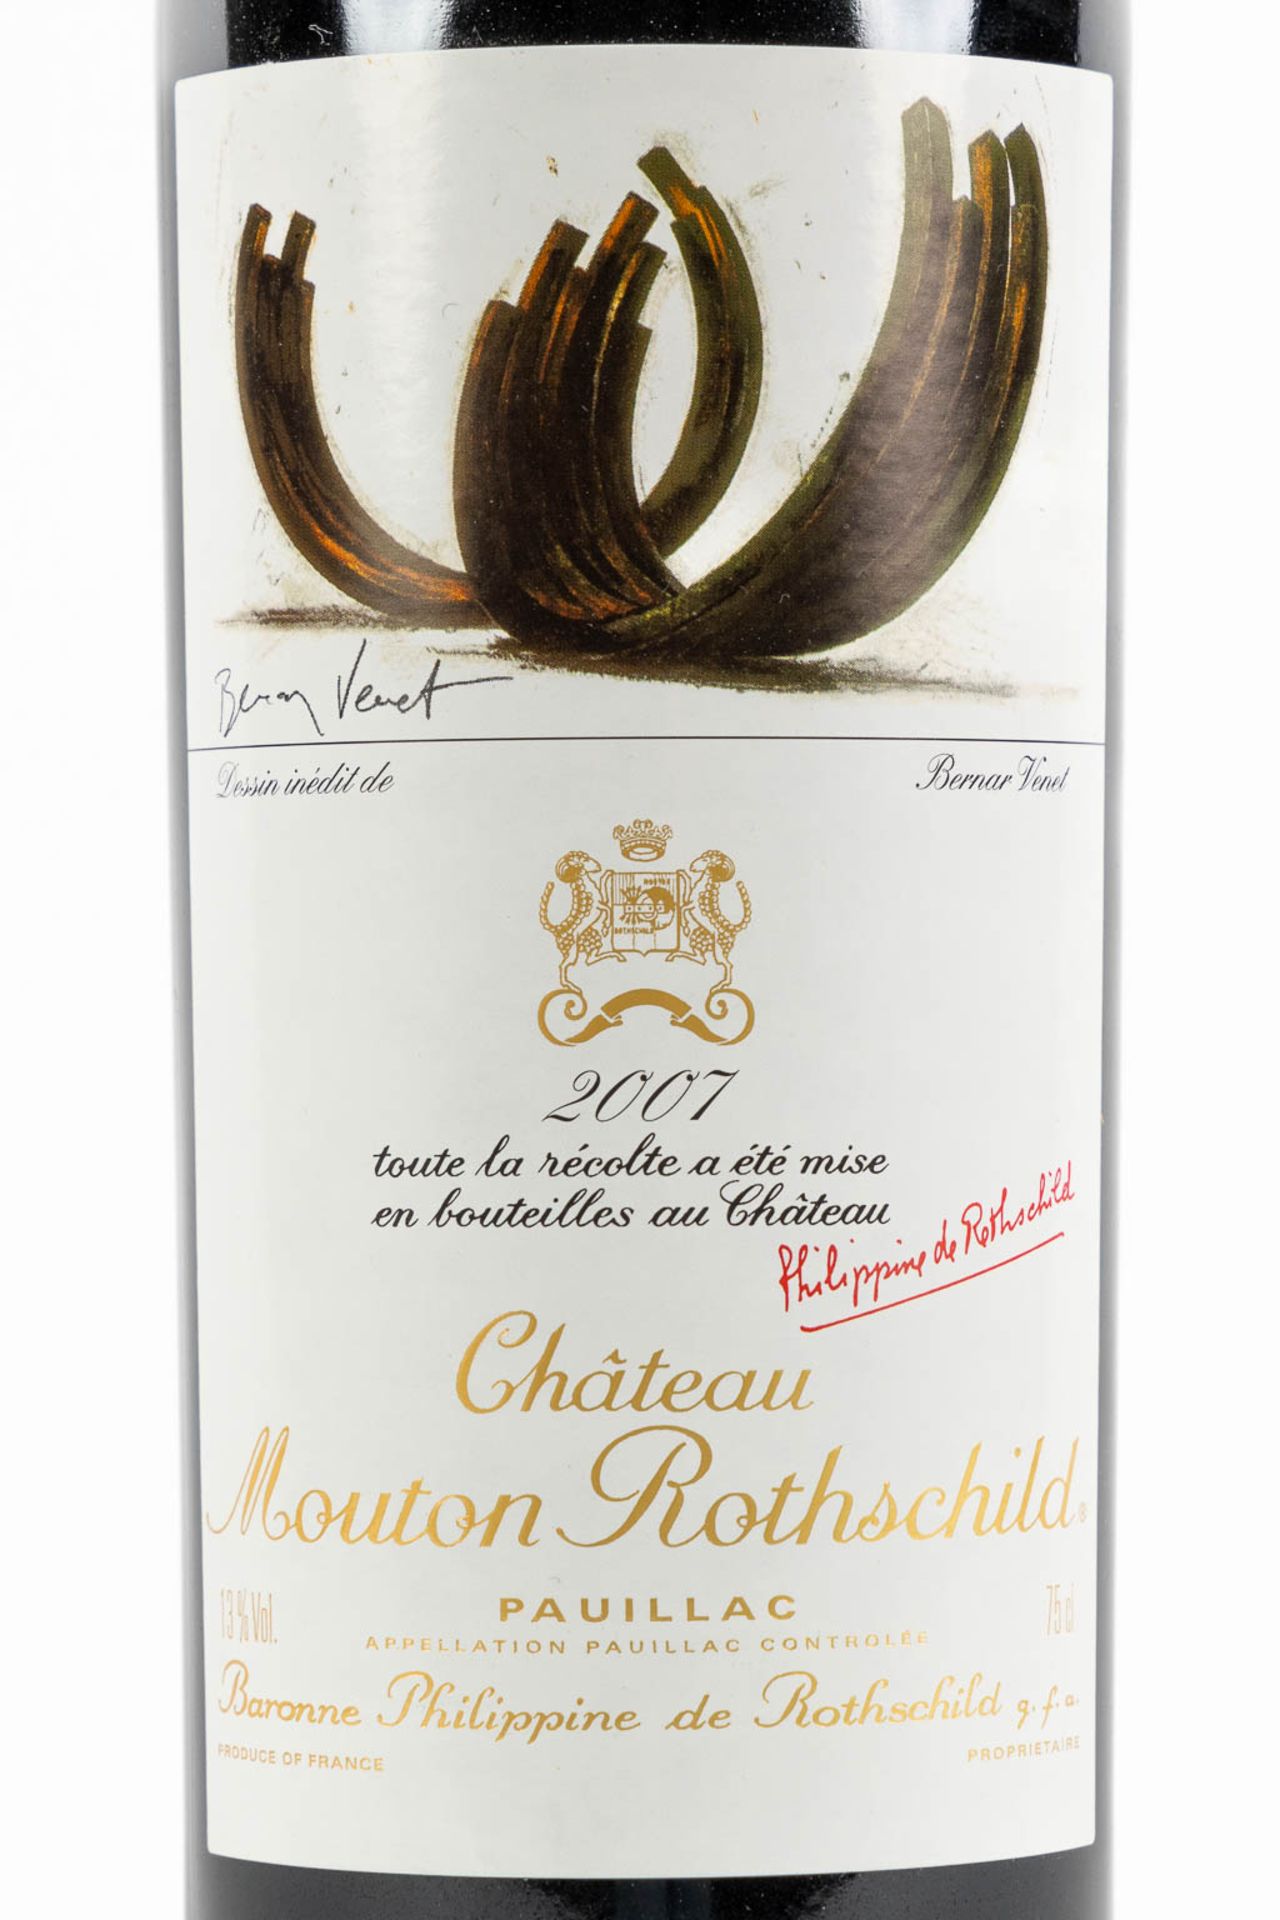 2007 Château Mouton Rothschild, Bernar Venet - Image 2 of 3